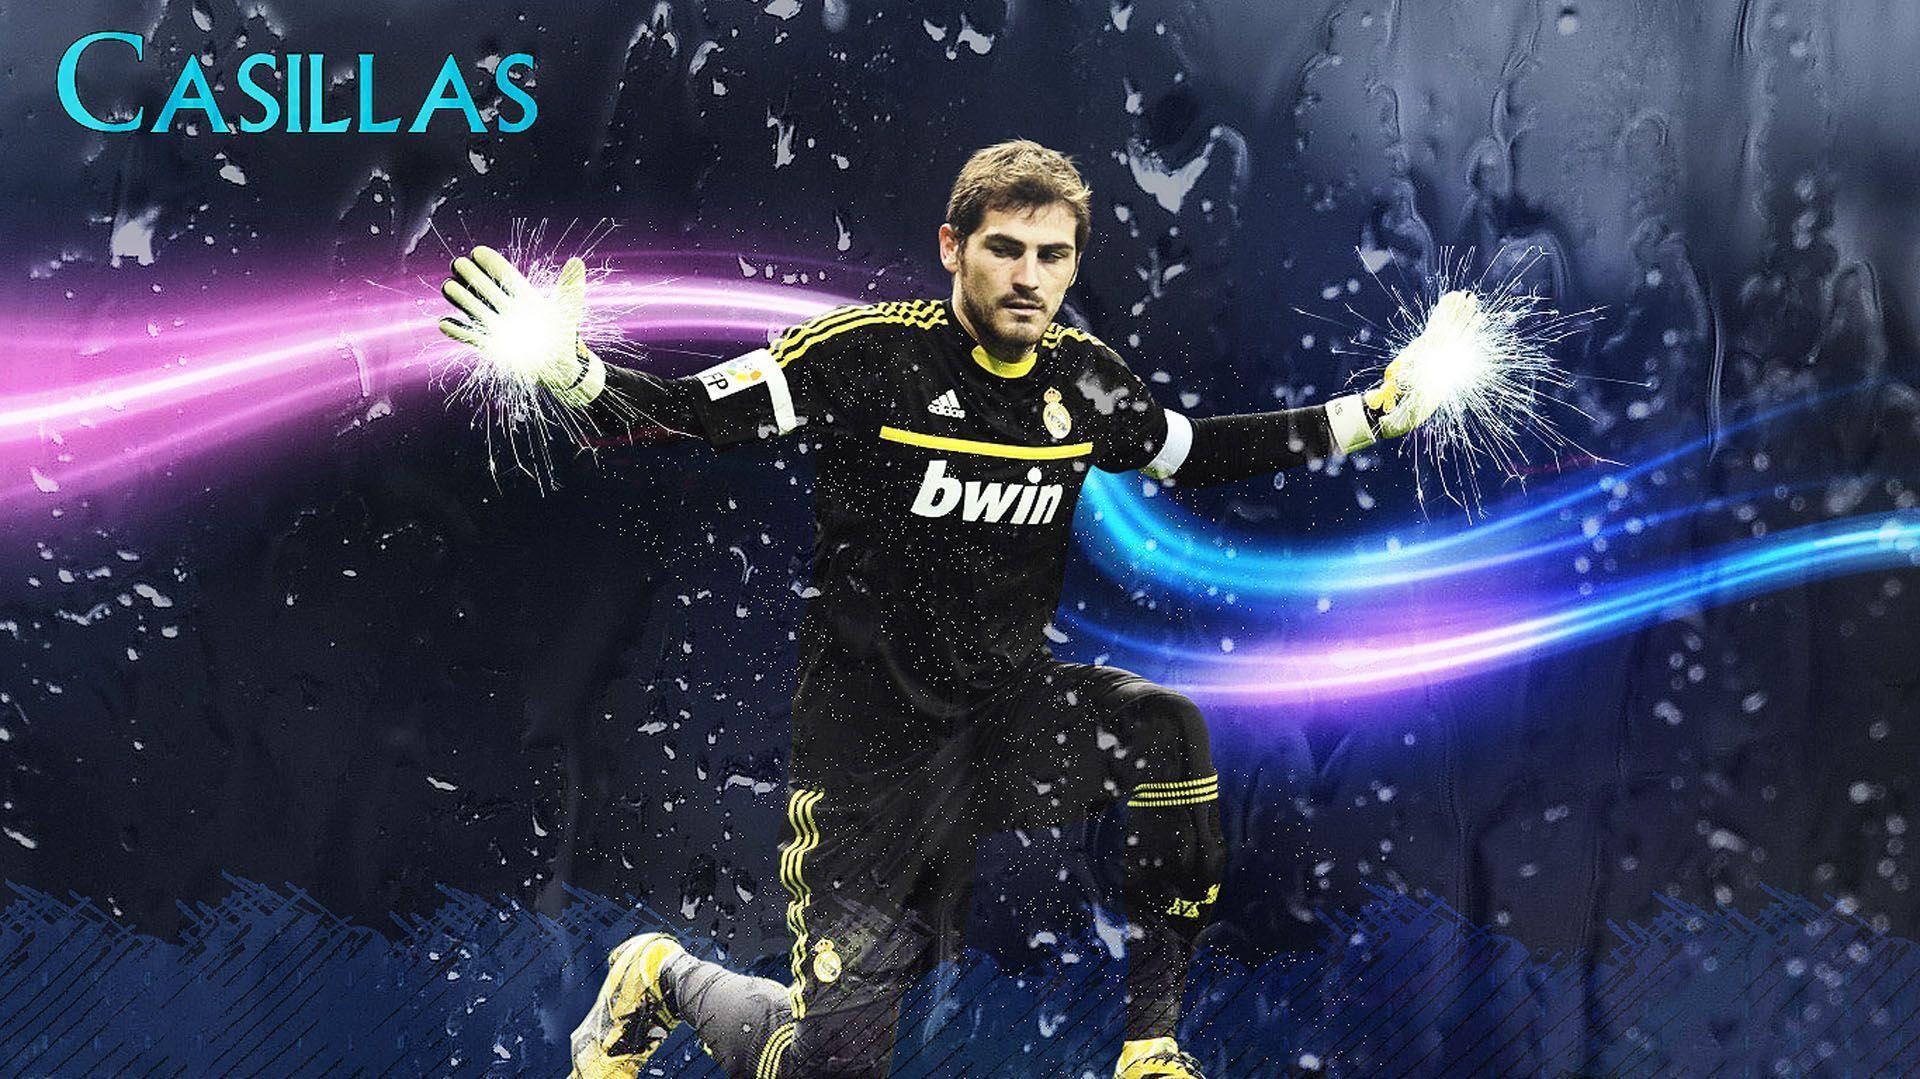 Iker Casillas Best Spanish Football Goalkeeper Wallpaper